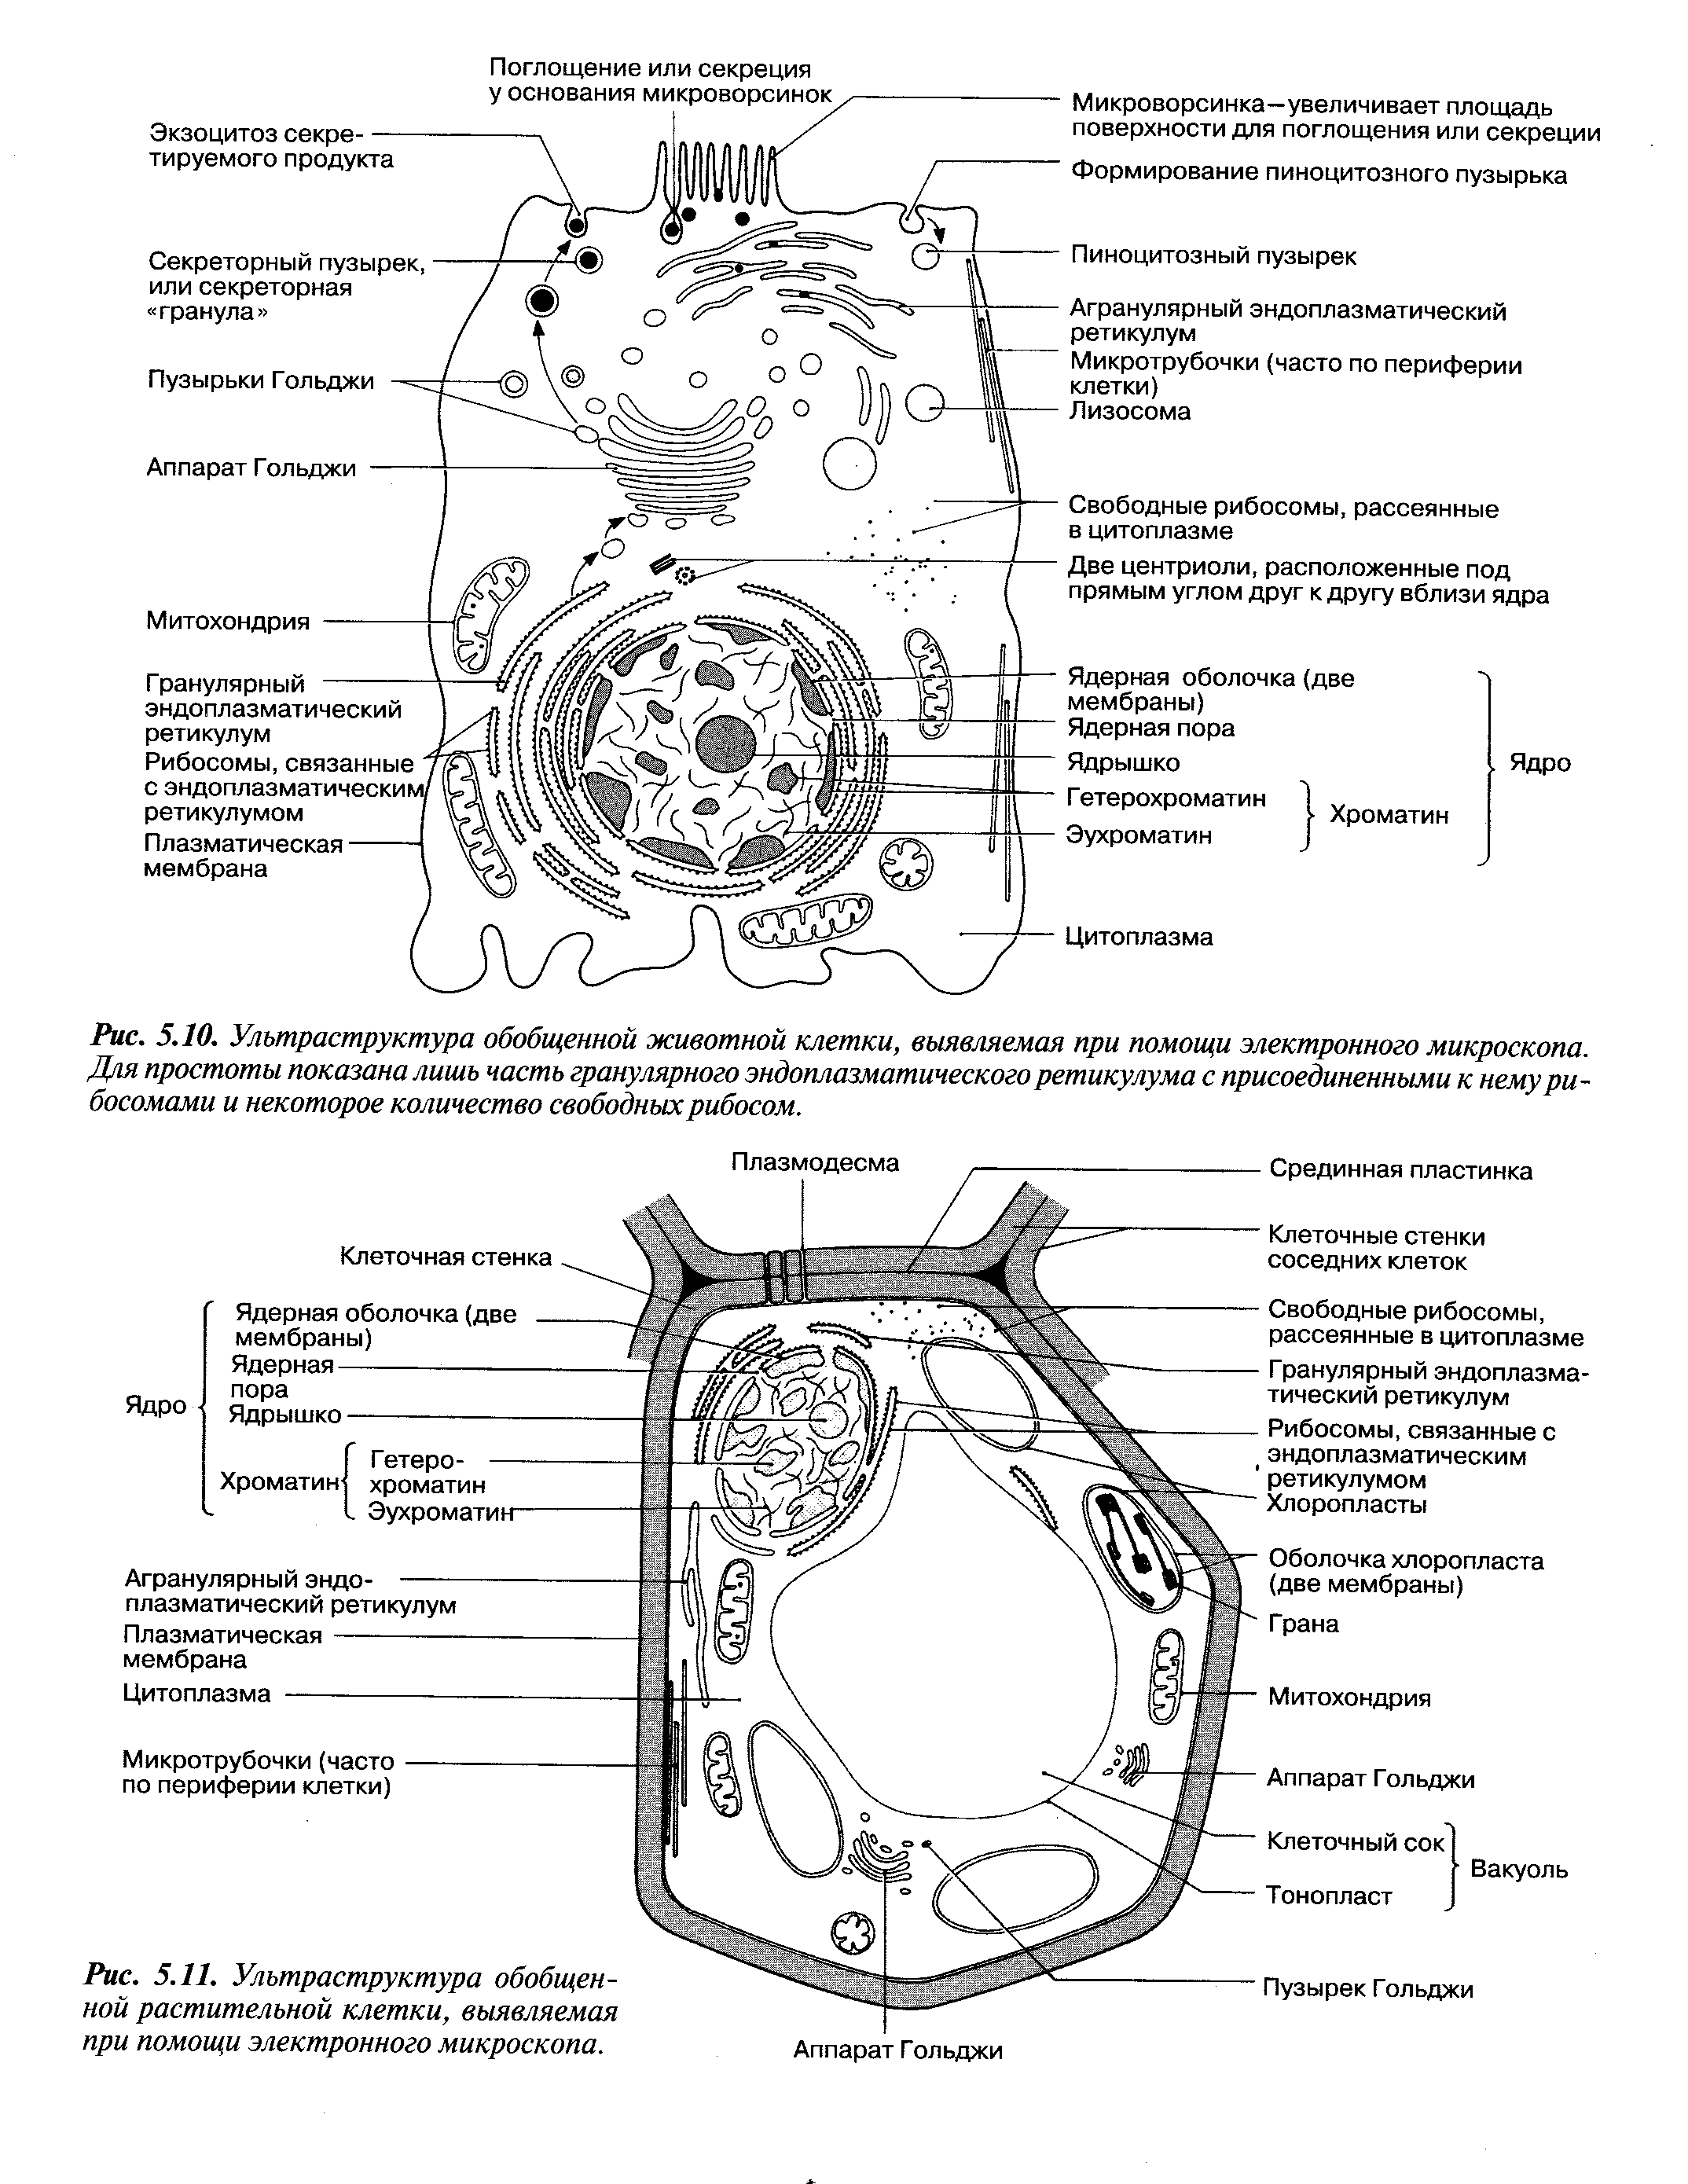 Схема строения растительной клетки электронная микроскопия